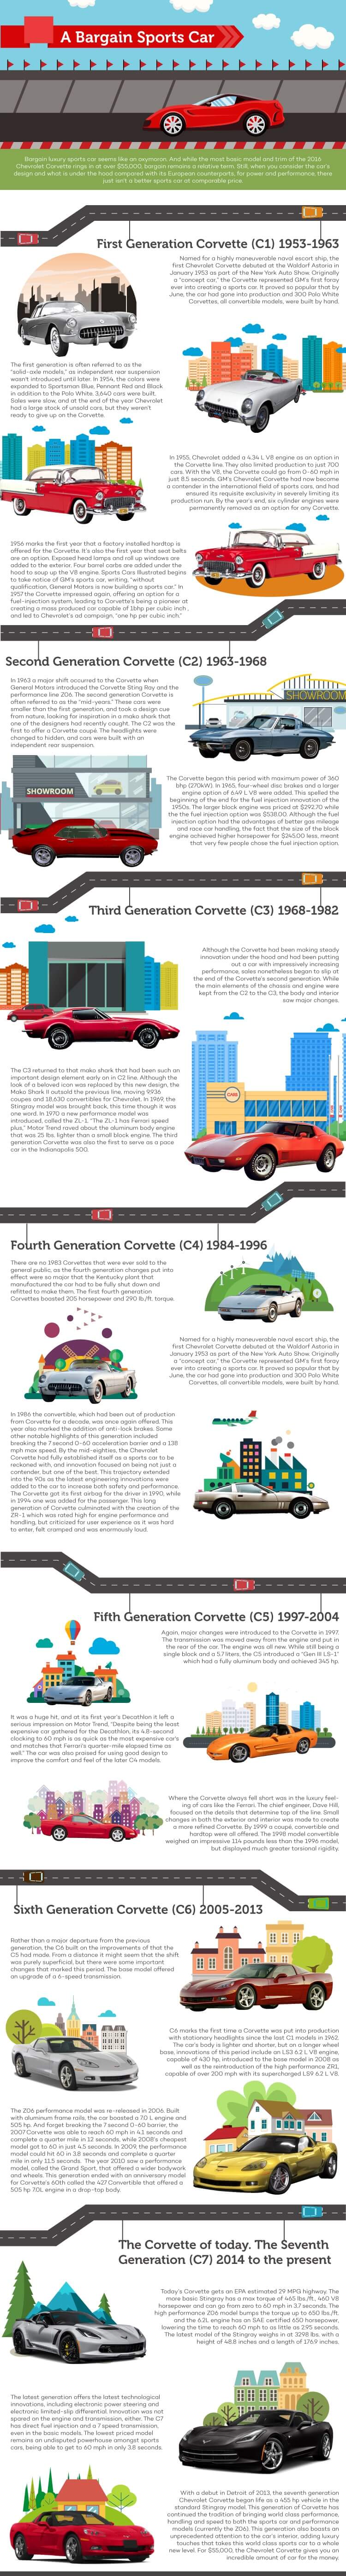 chevy corvette infographic